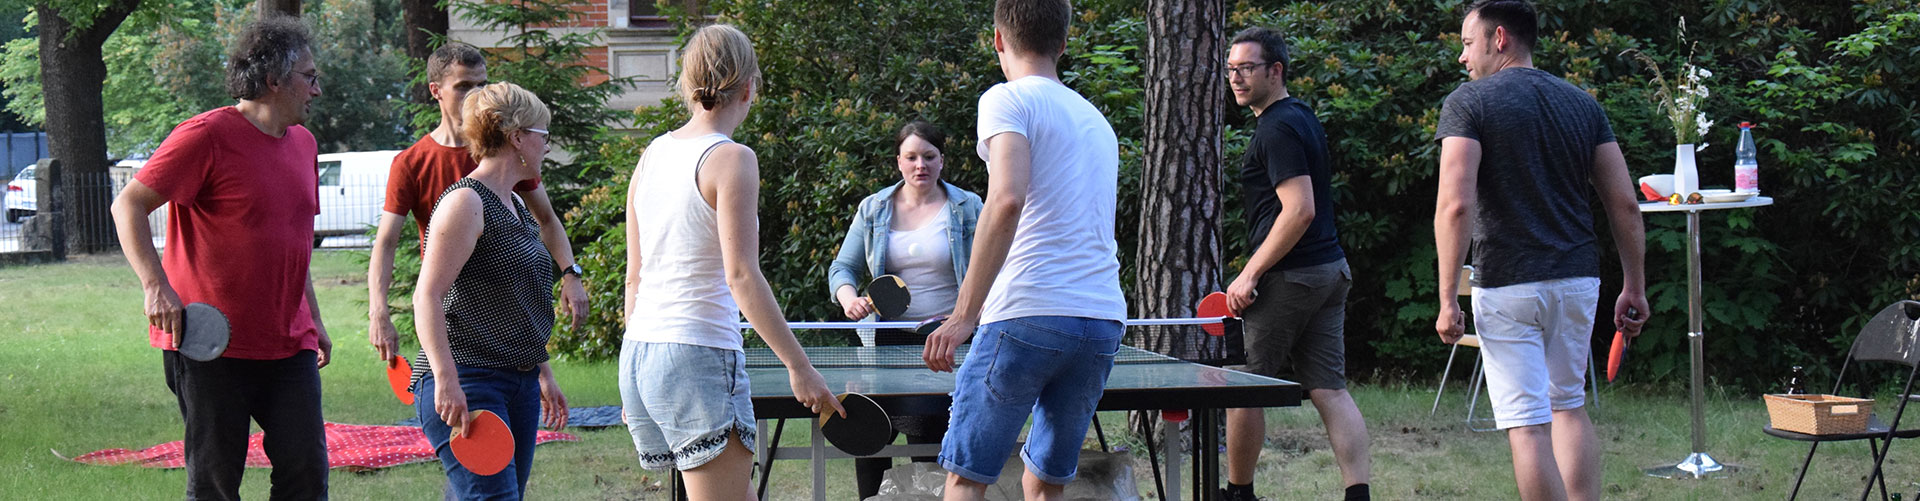 Foto: eine Gruppe Menschen spielen Tischtennis